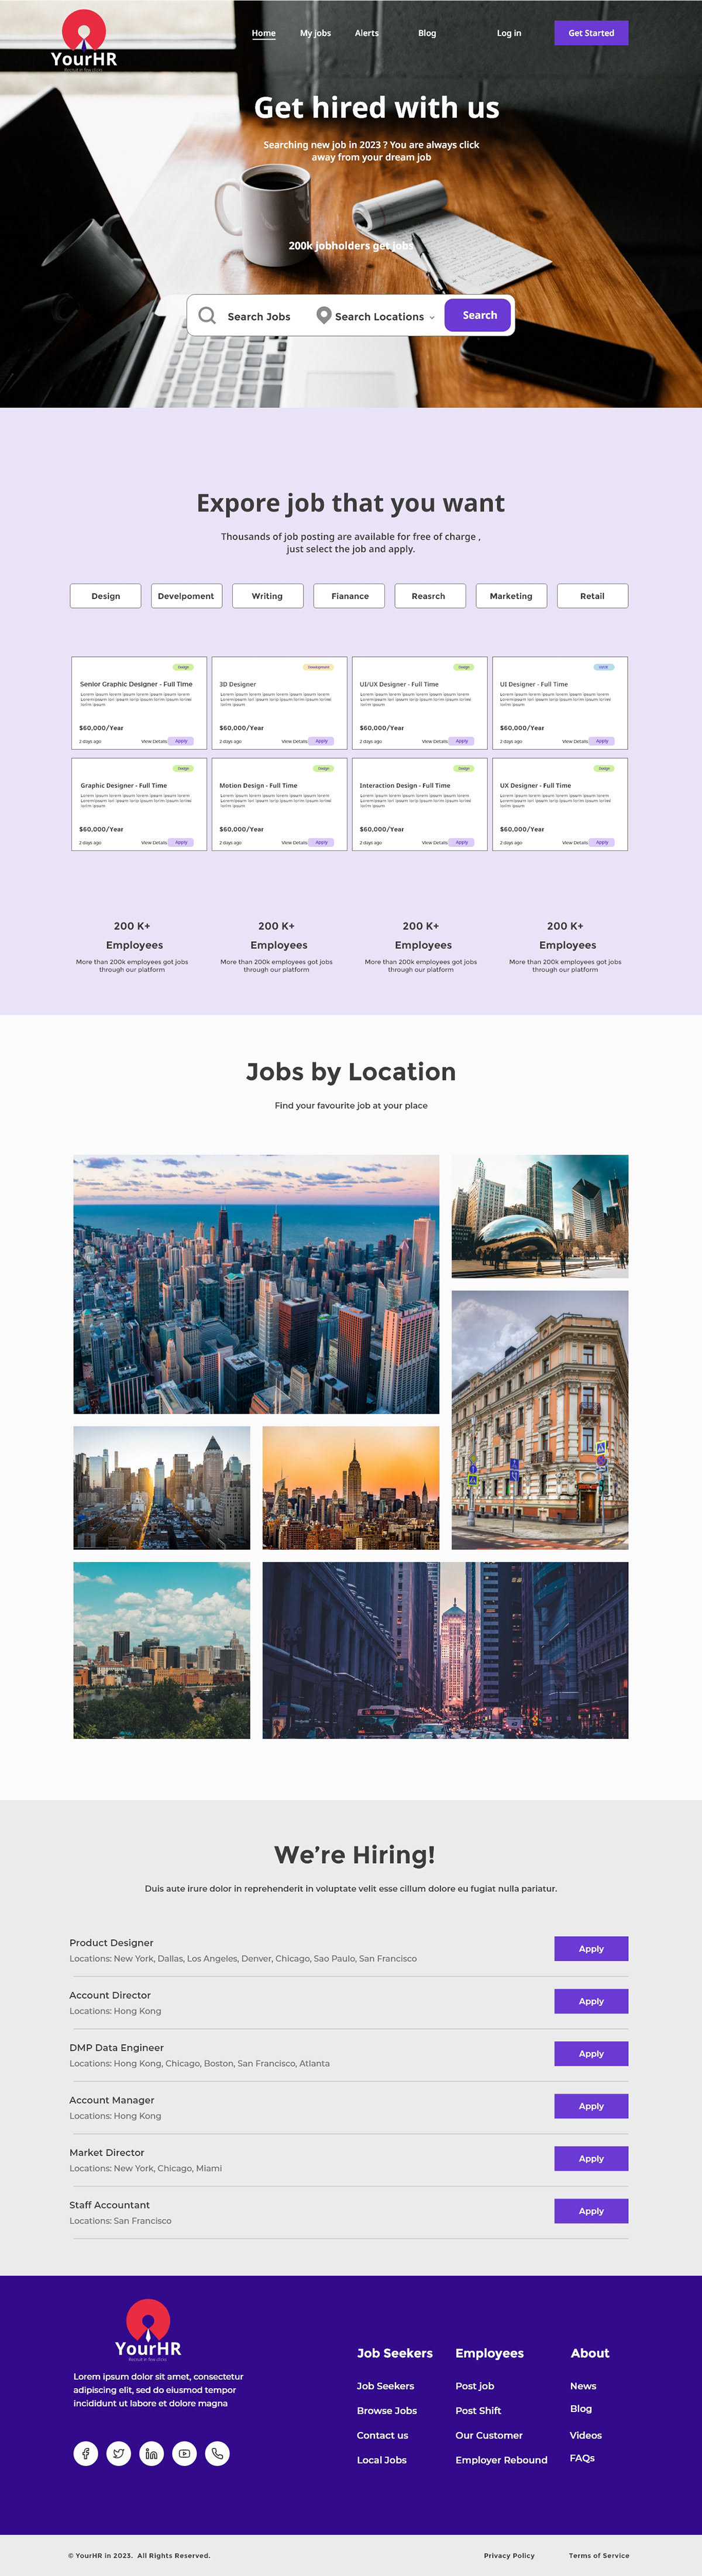 Website job portal Adobe XD Job Search hire Blog suggestions login job location job seeker